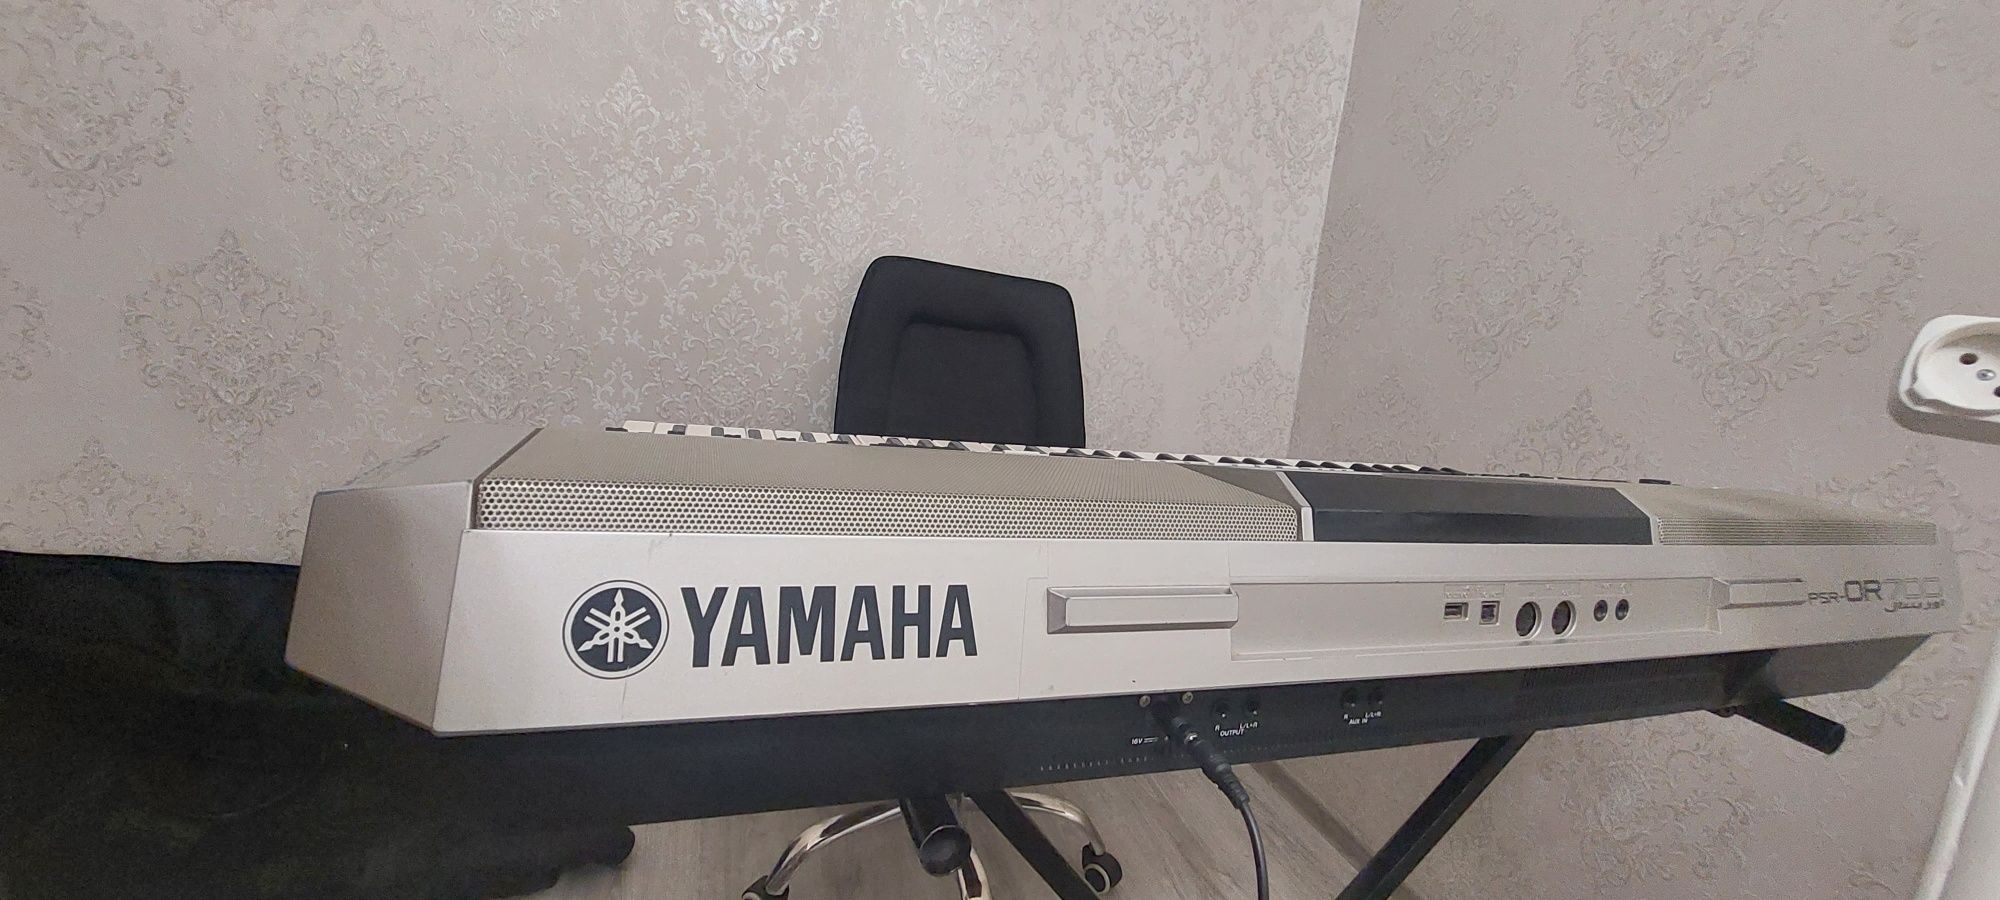 Yamaha or 700 коробка ,документы имеется